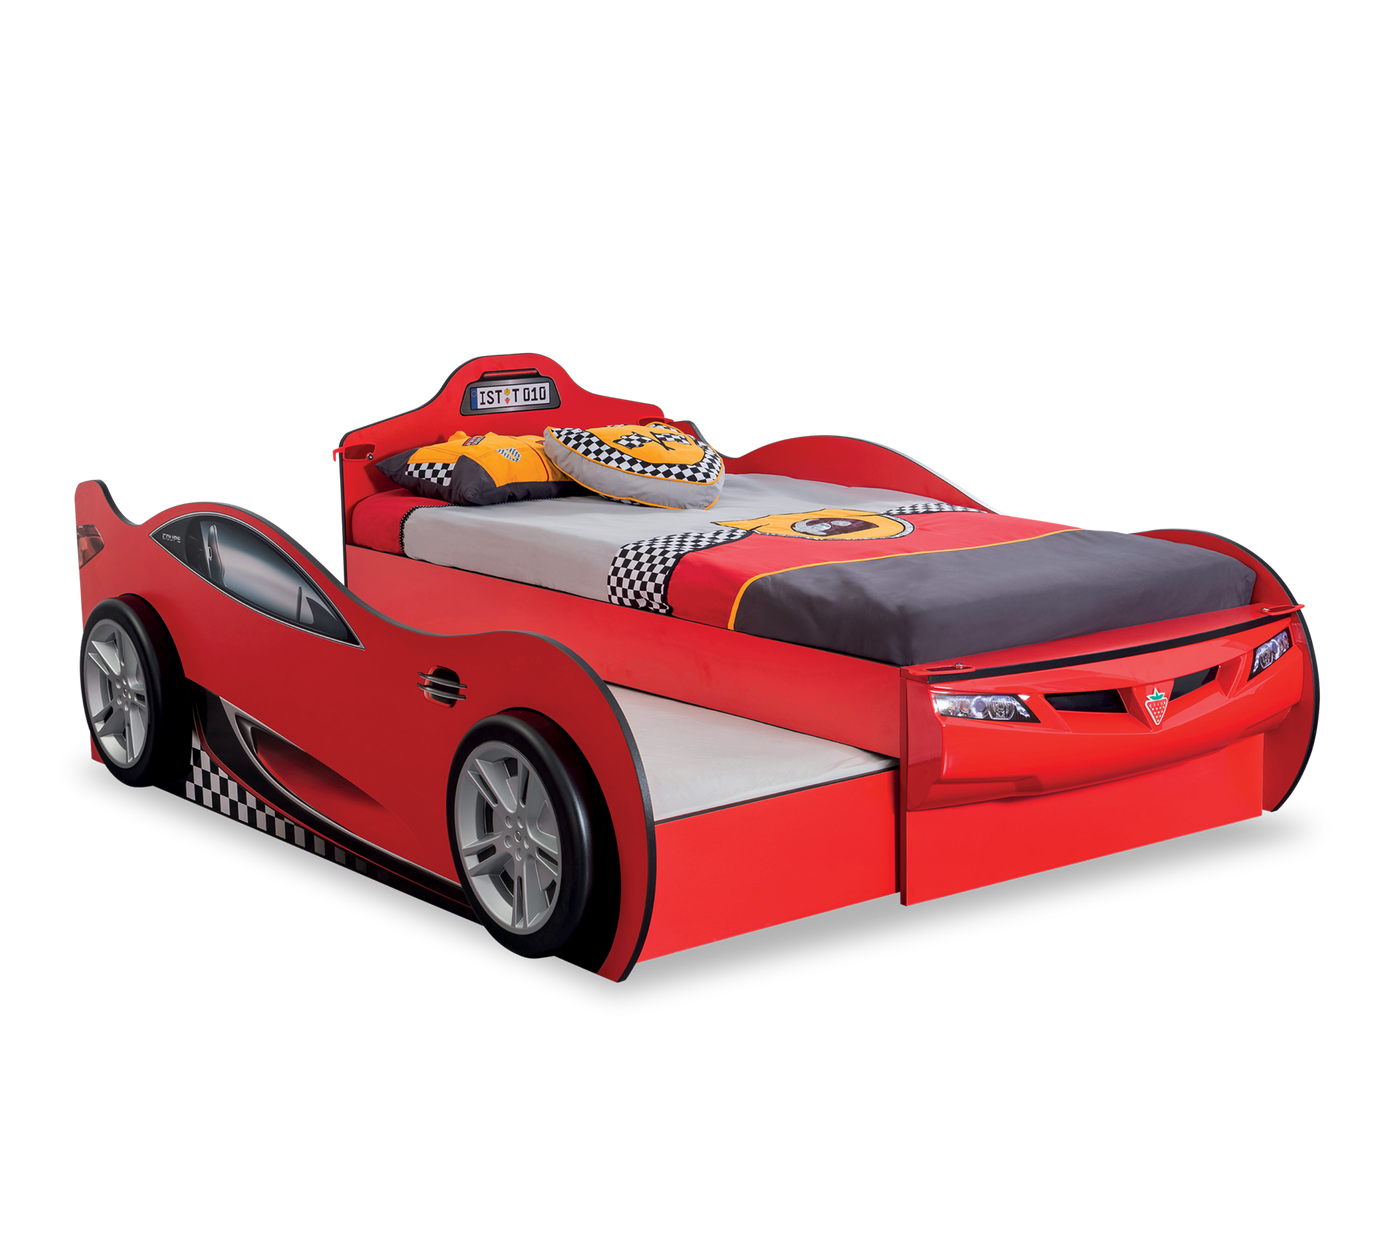 Racecup Araba Yatak Kırmızı (Arkadaş Yataklı)